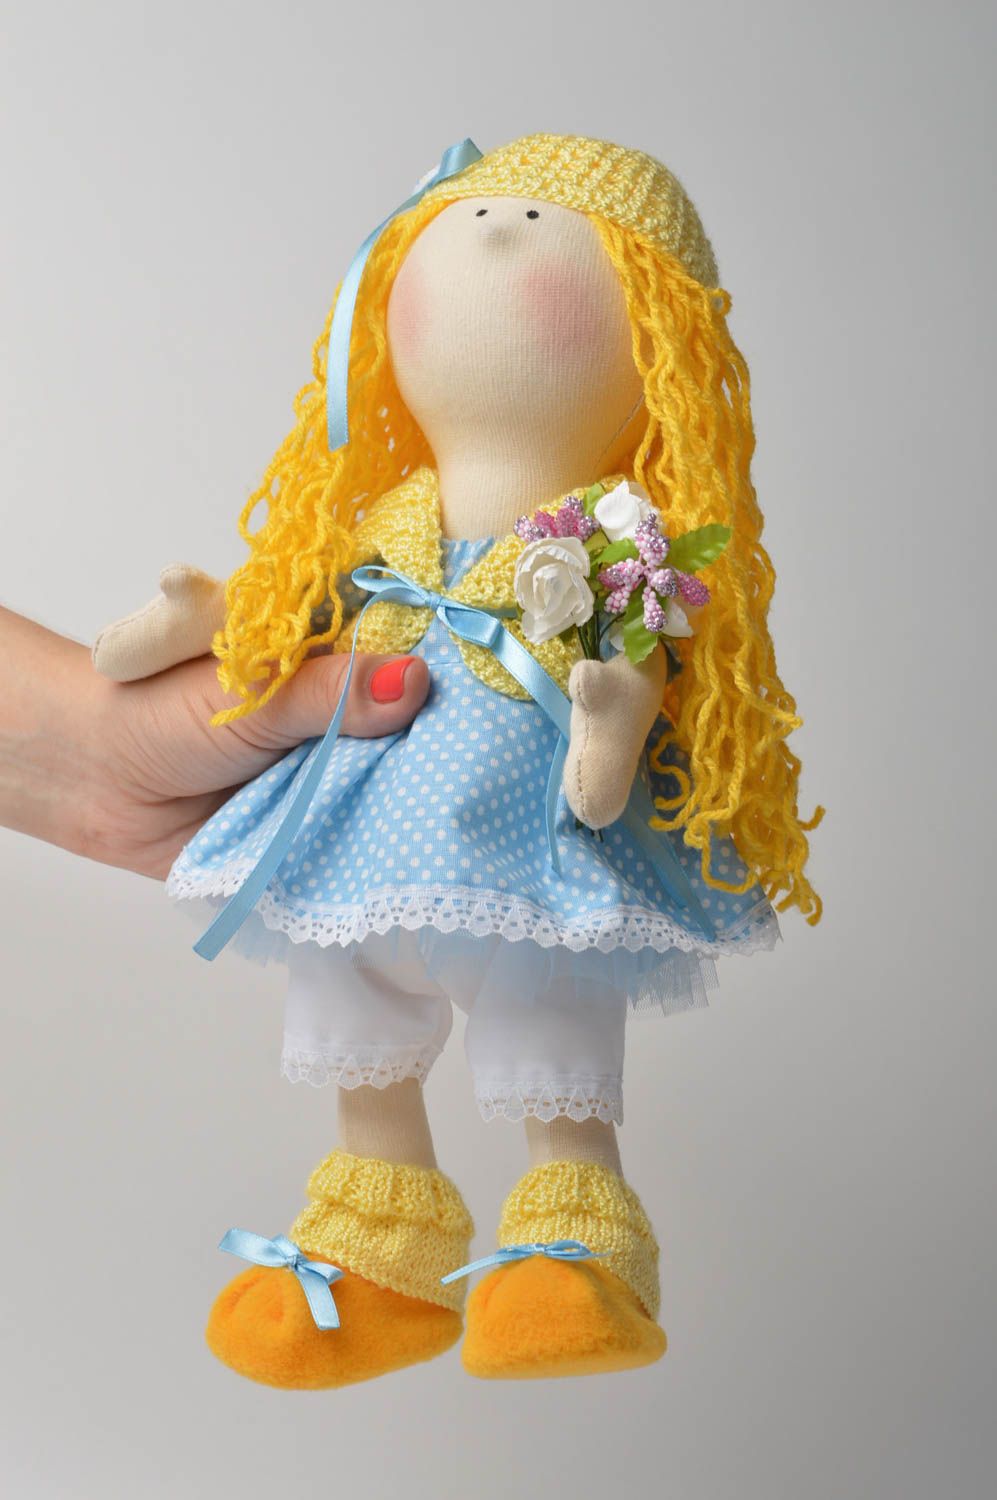 Spielzeug Puppe handmade Künstler Puppe Wohnzimmer Deko in Gelb Blau schön foto 1